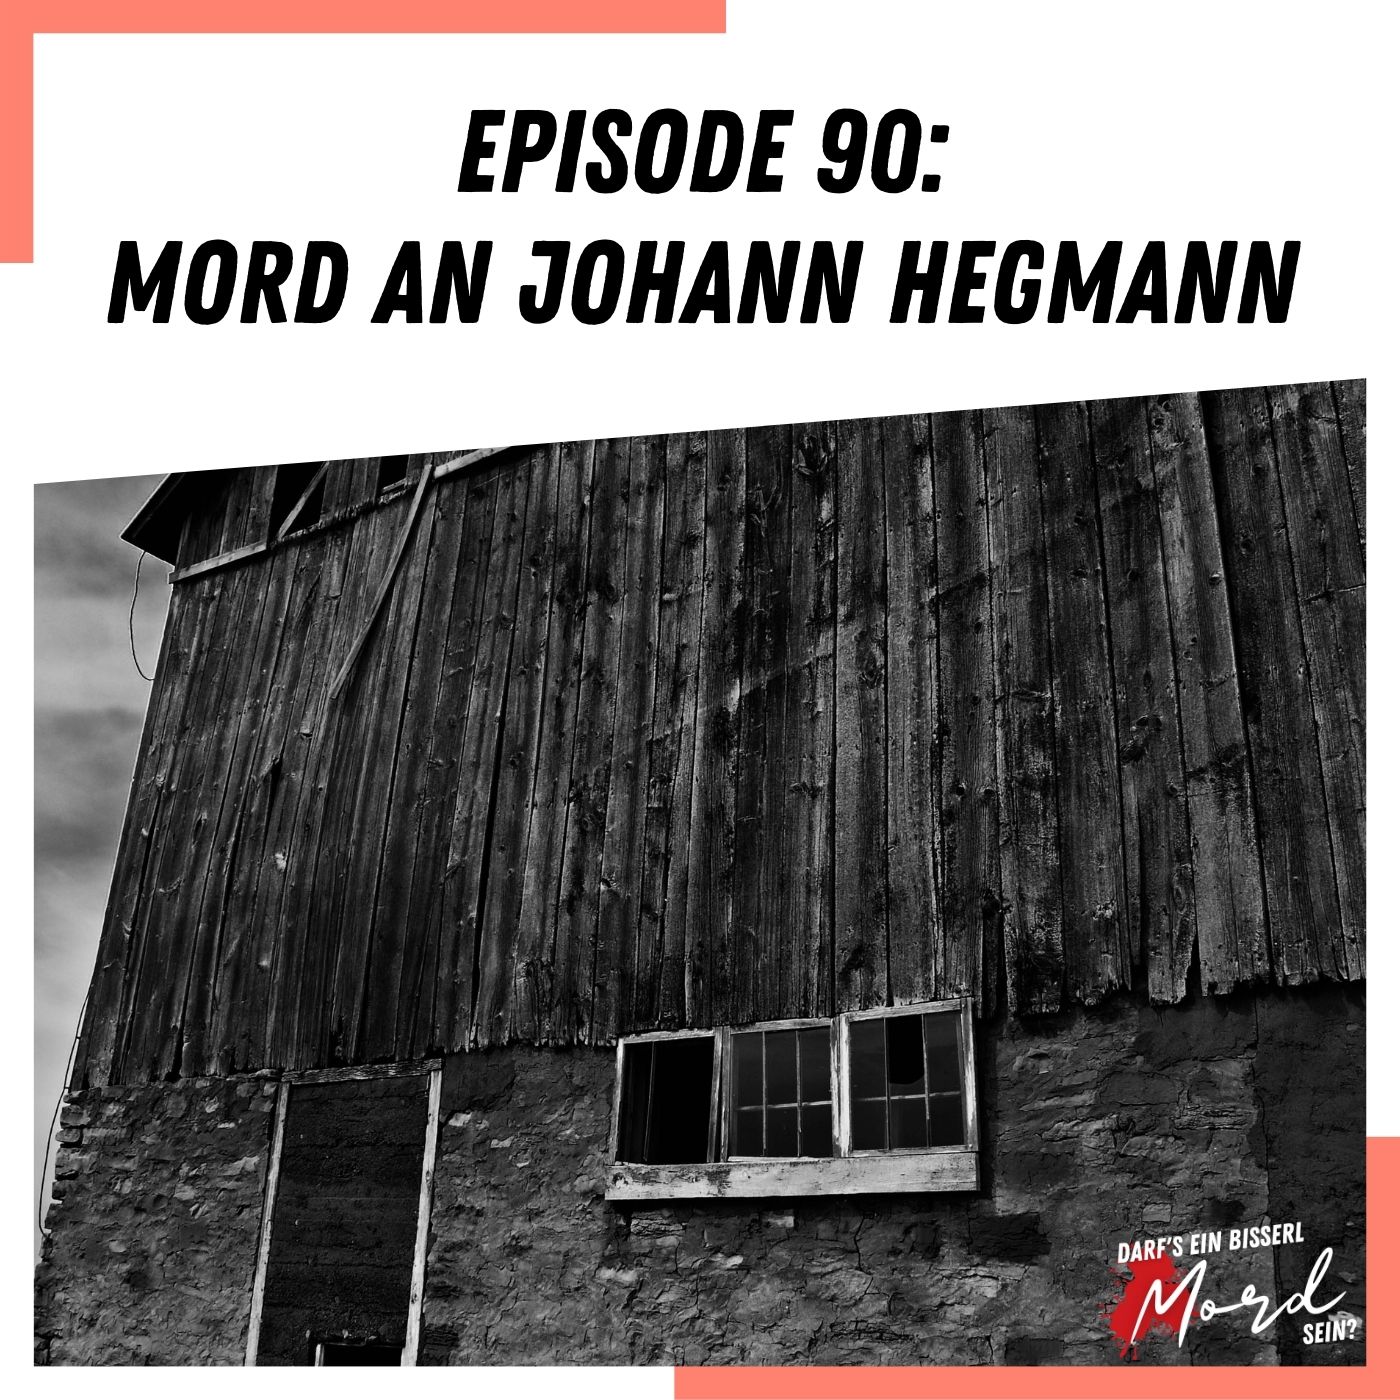 Episode 90: Mord an Johann Hegmann